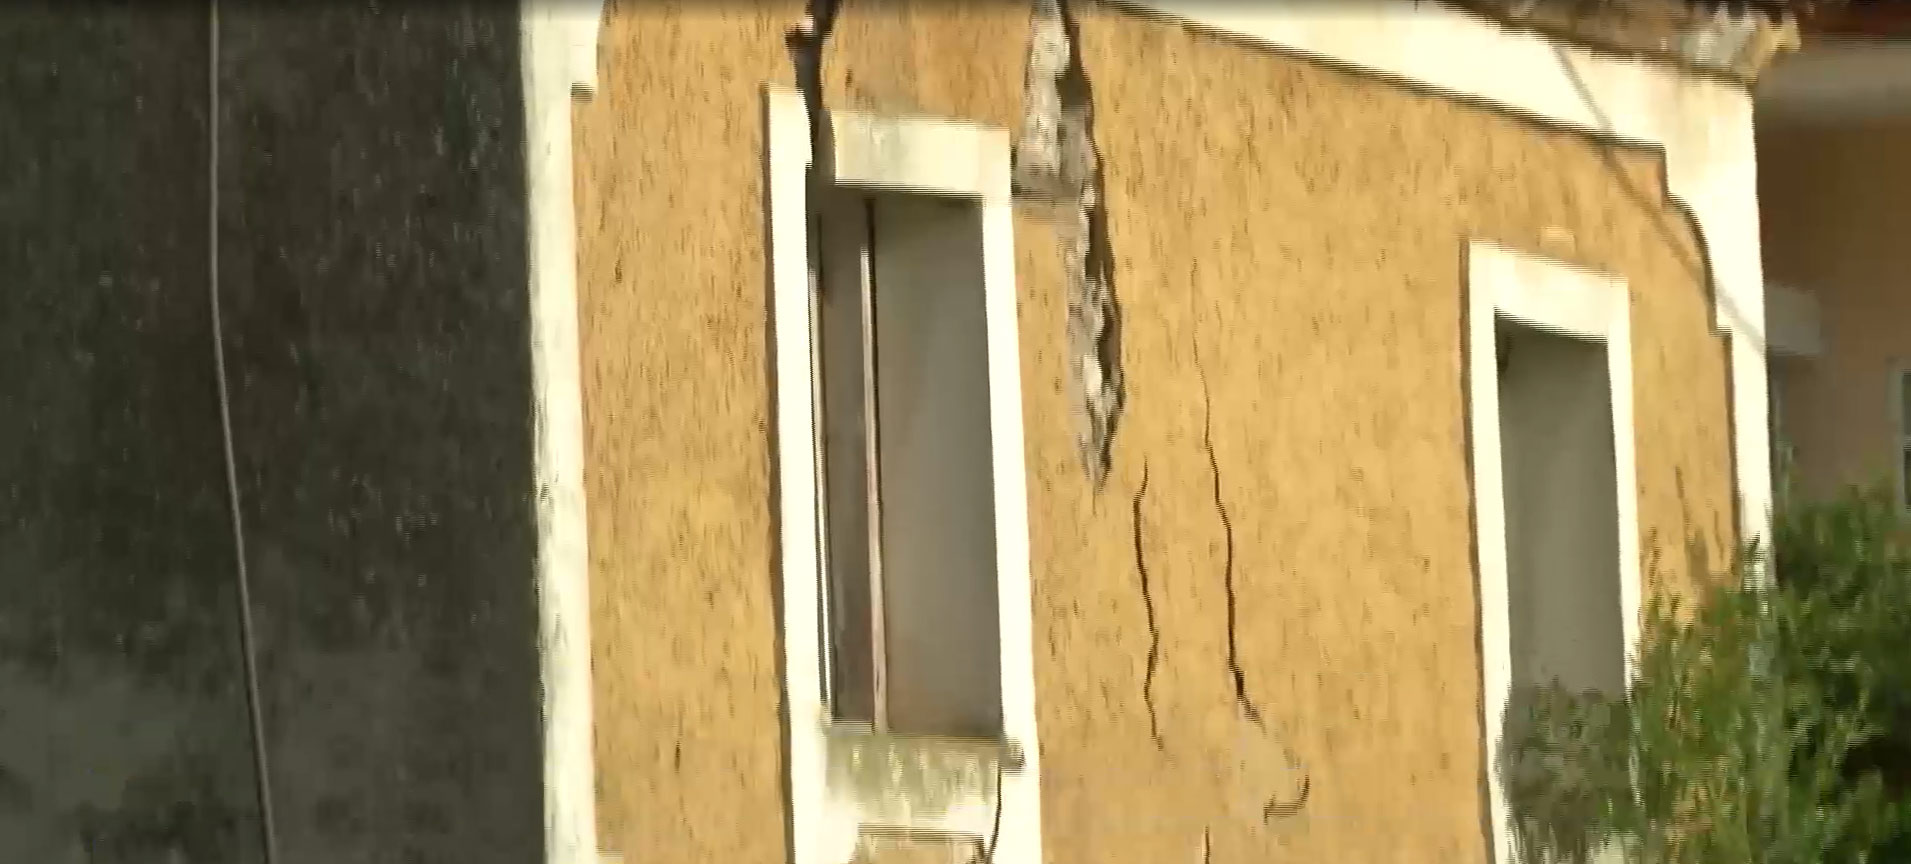 Ρωγμές σε σπίτια σε χωριά της Αταλάντης και καθίζηση σε παραλία στην Αιδηψό προκάλεσε ο σεισμός των 4,8 Ρίχτερ – Τι λένε οι κάτοικοι